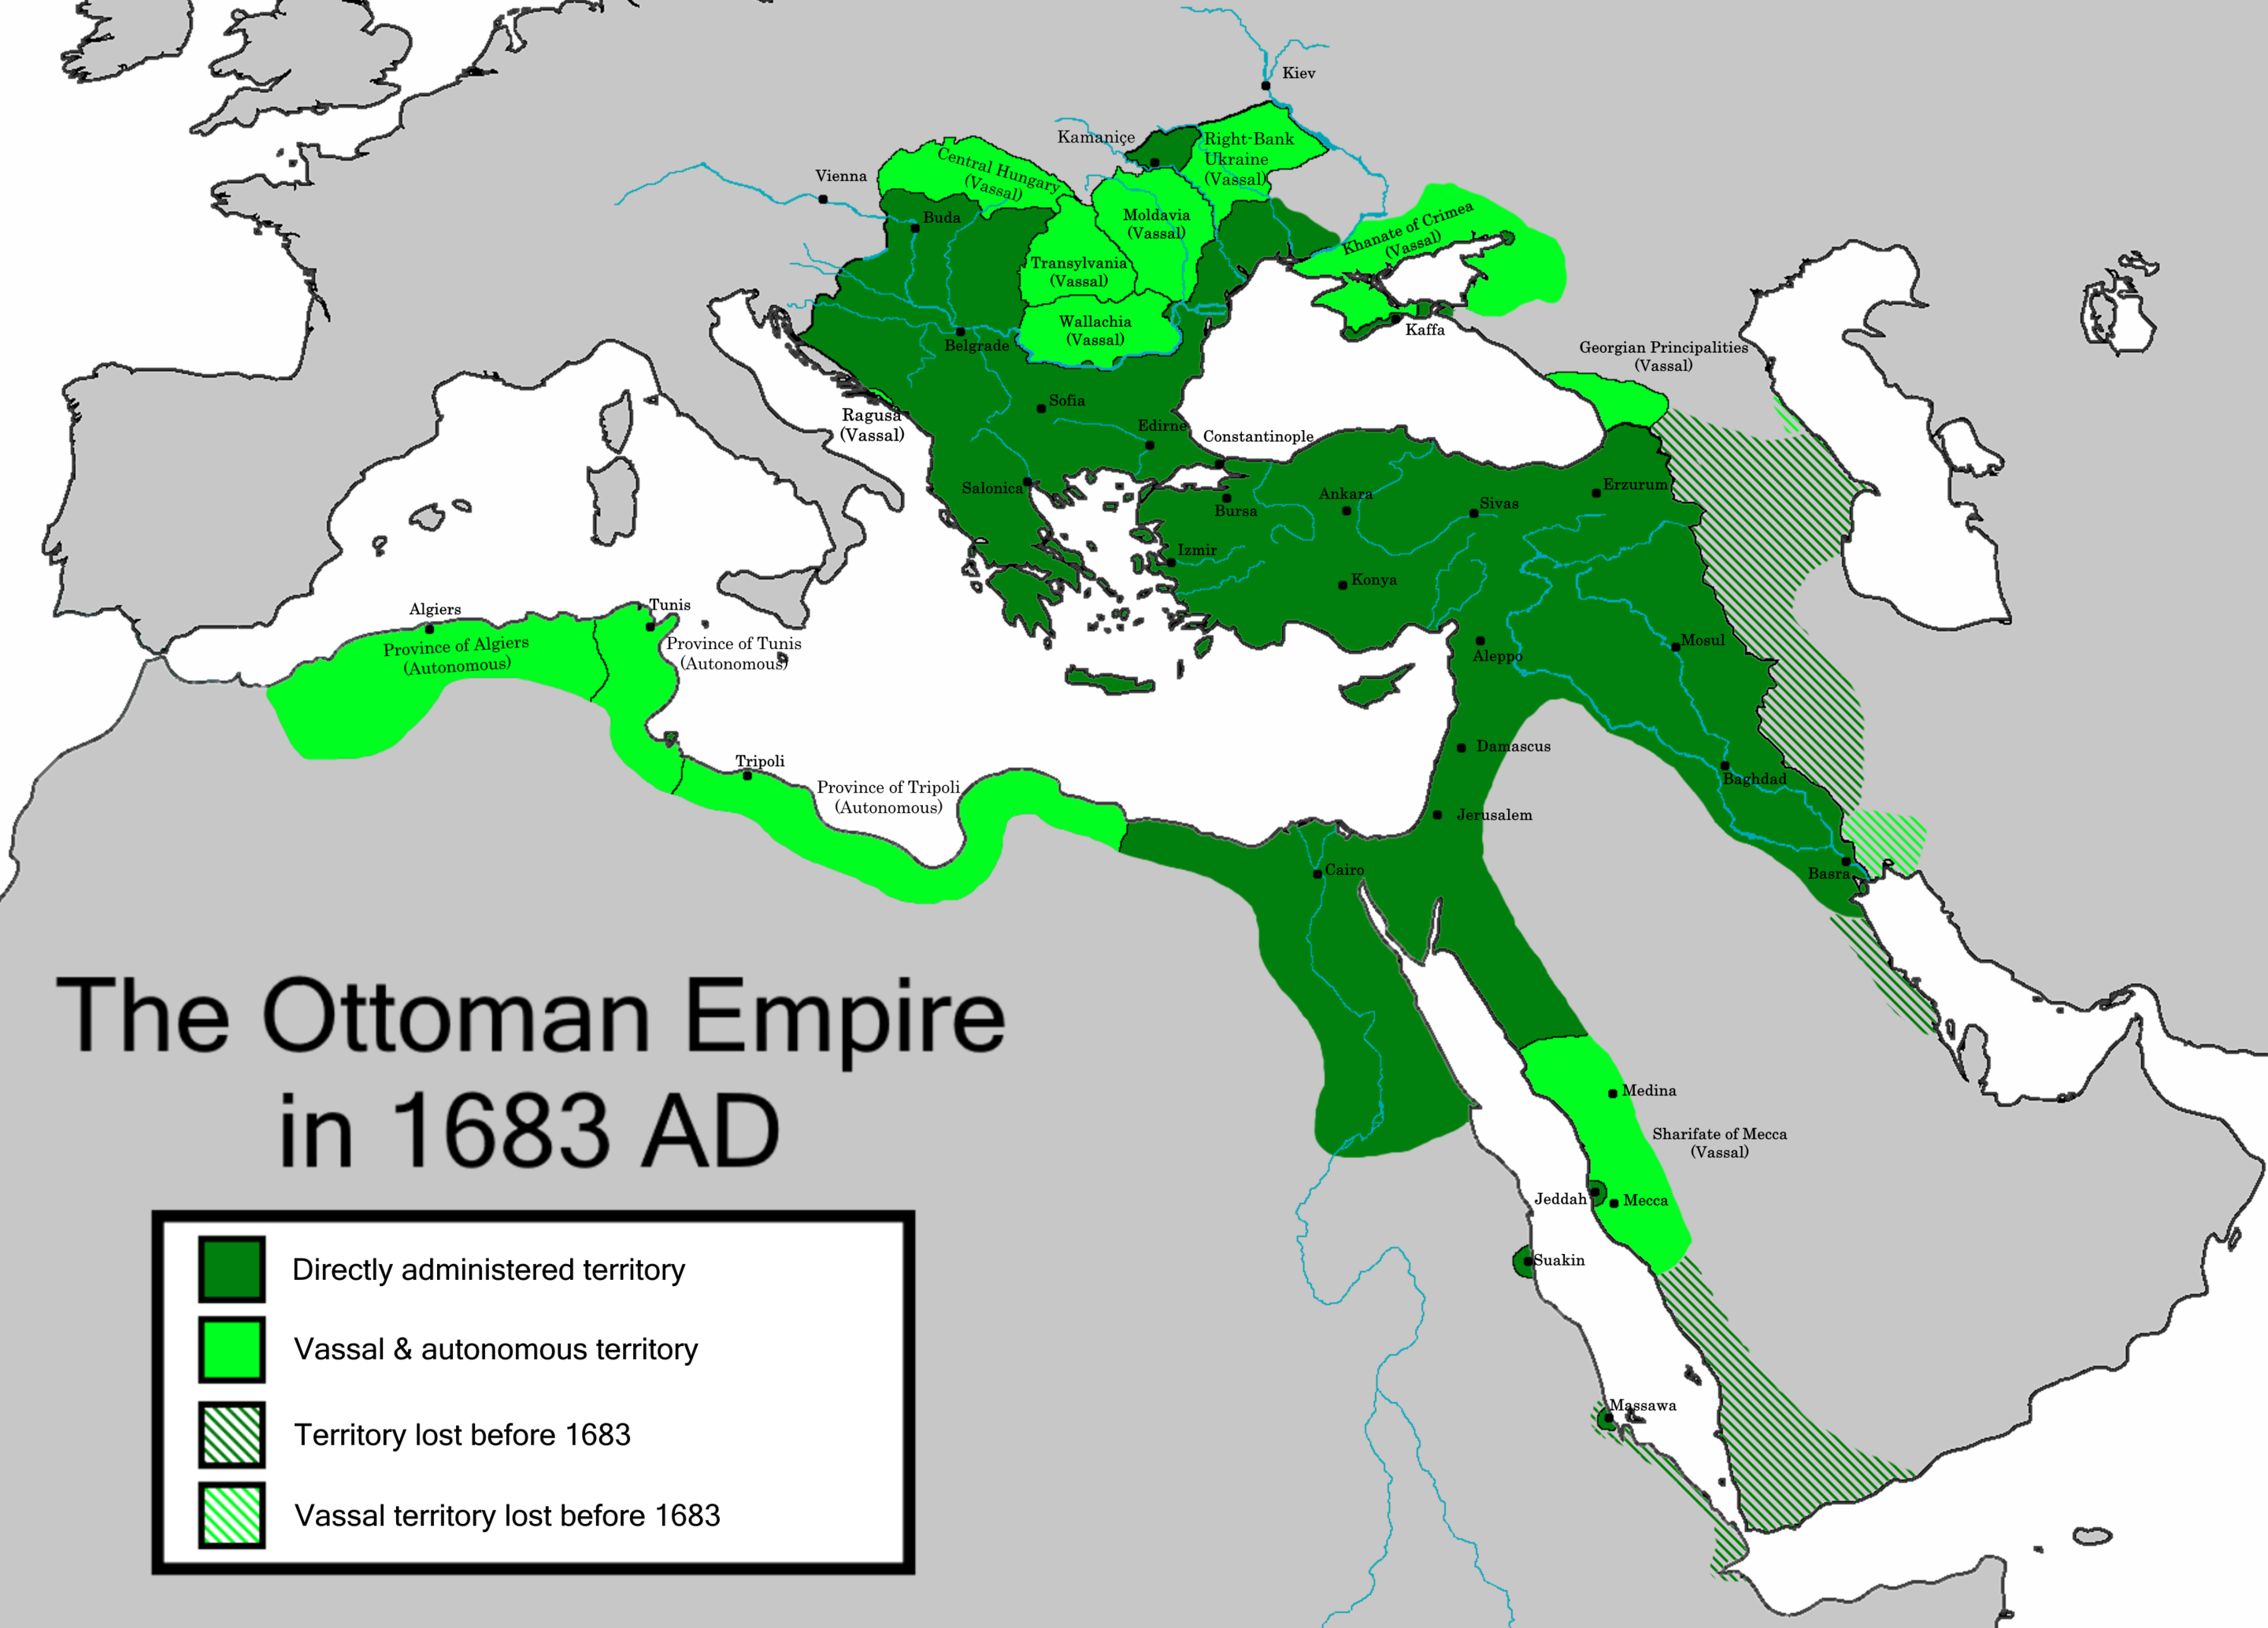 Ottoman Empire in 1683